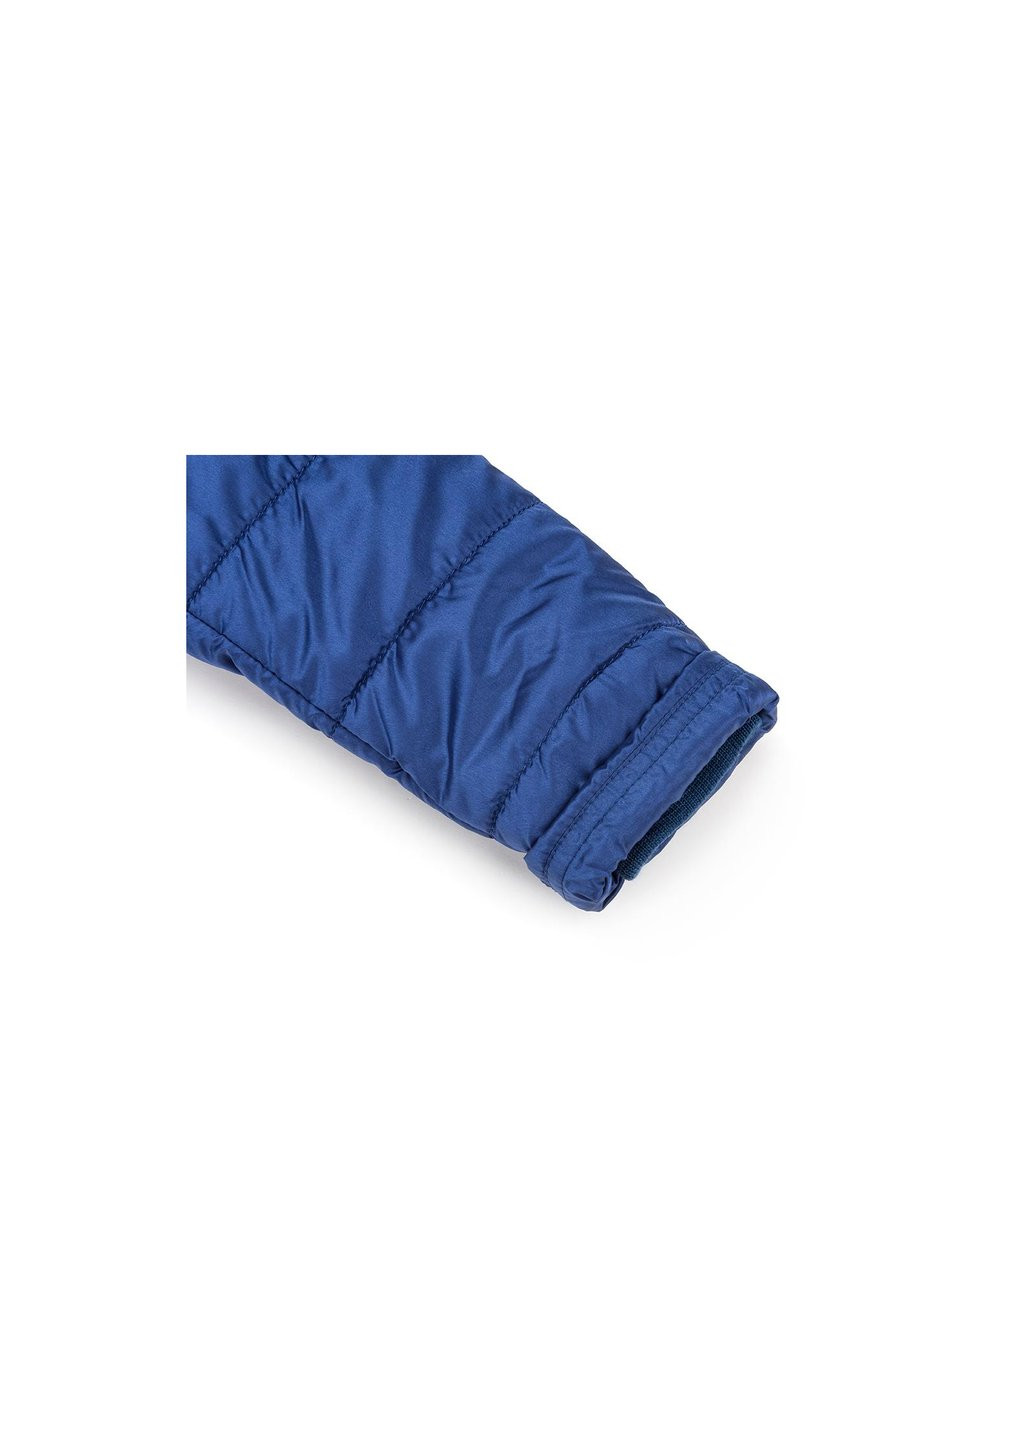 Голубая демисезонная куртка удлиненная с капюшоном и цветочками (sicy-g107-116g-blue) Snowimage